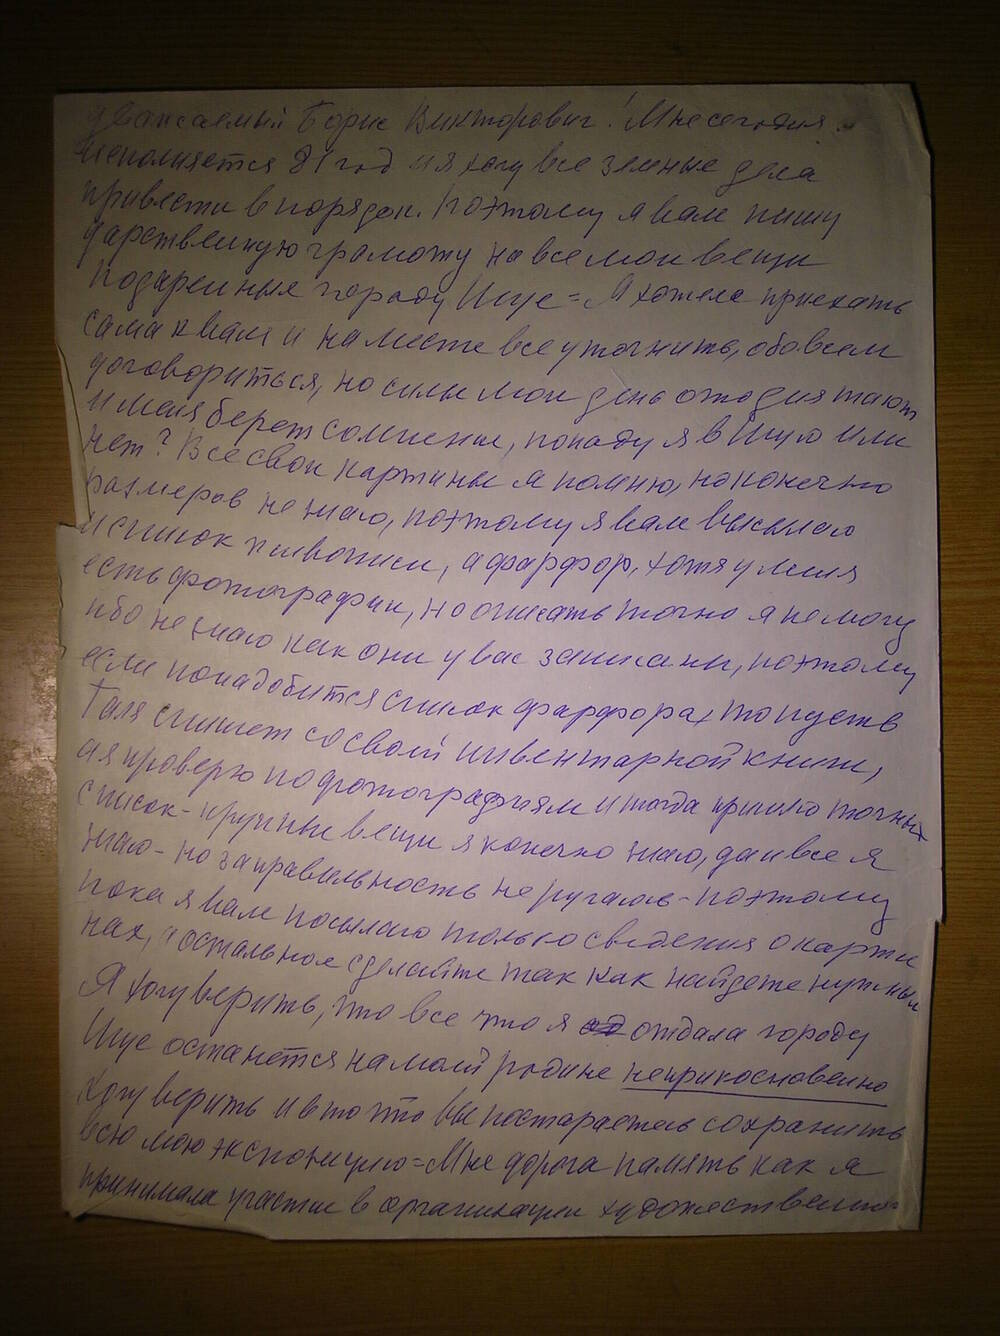 Письмо от Мазуровой Е.Я. Кубареву Б.В. делового характера. Г. Москва.